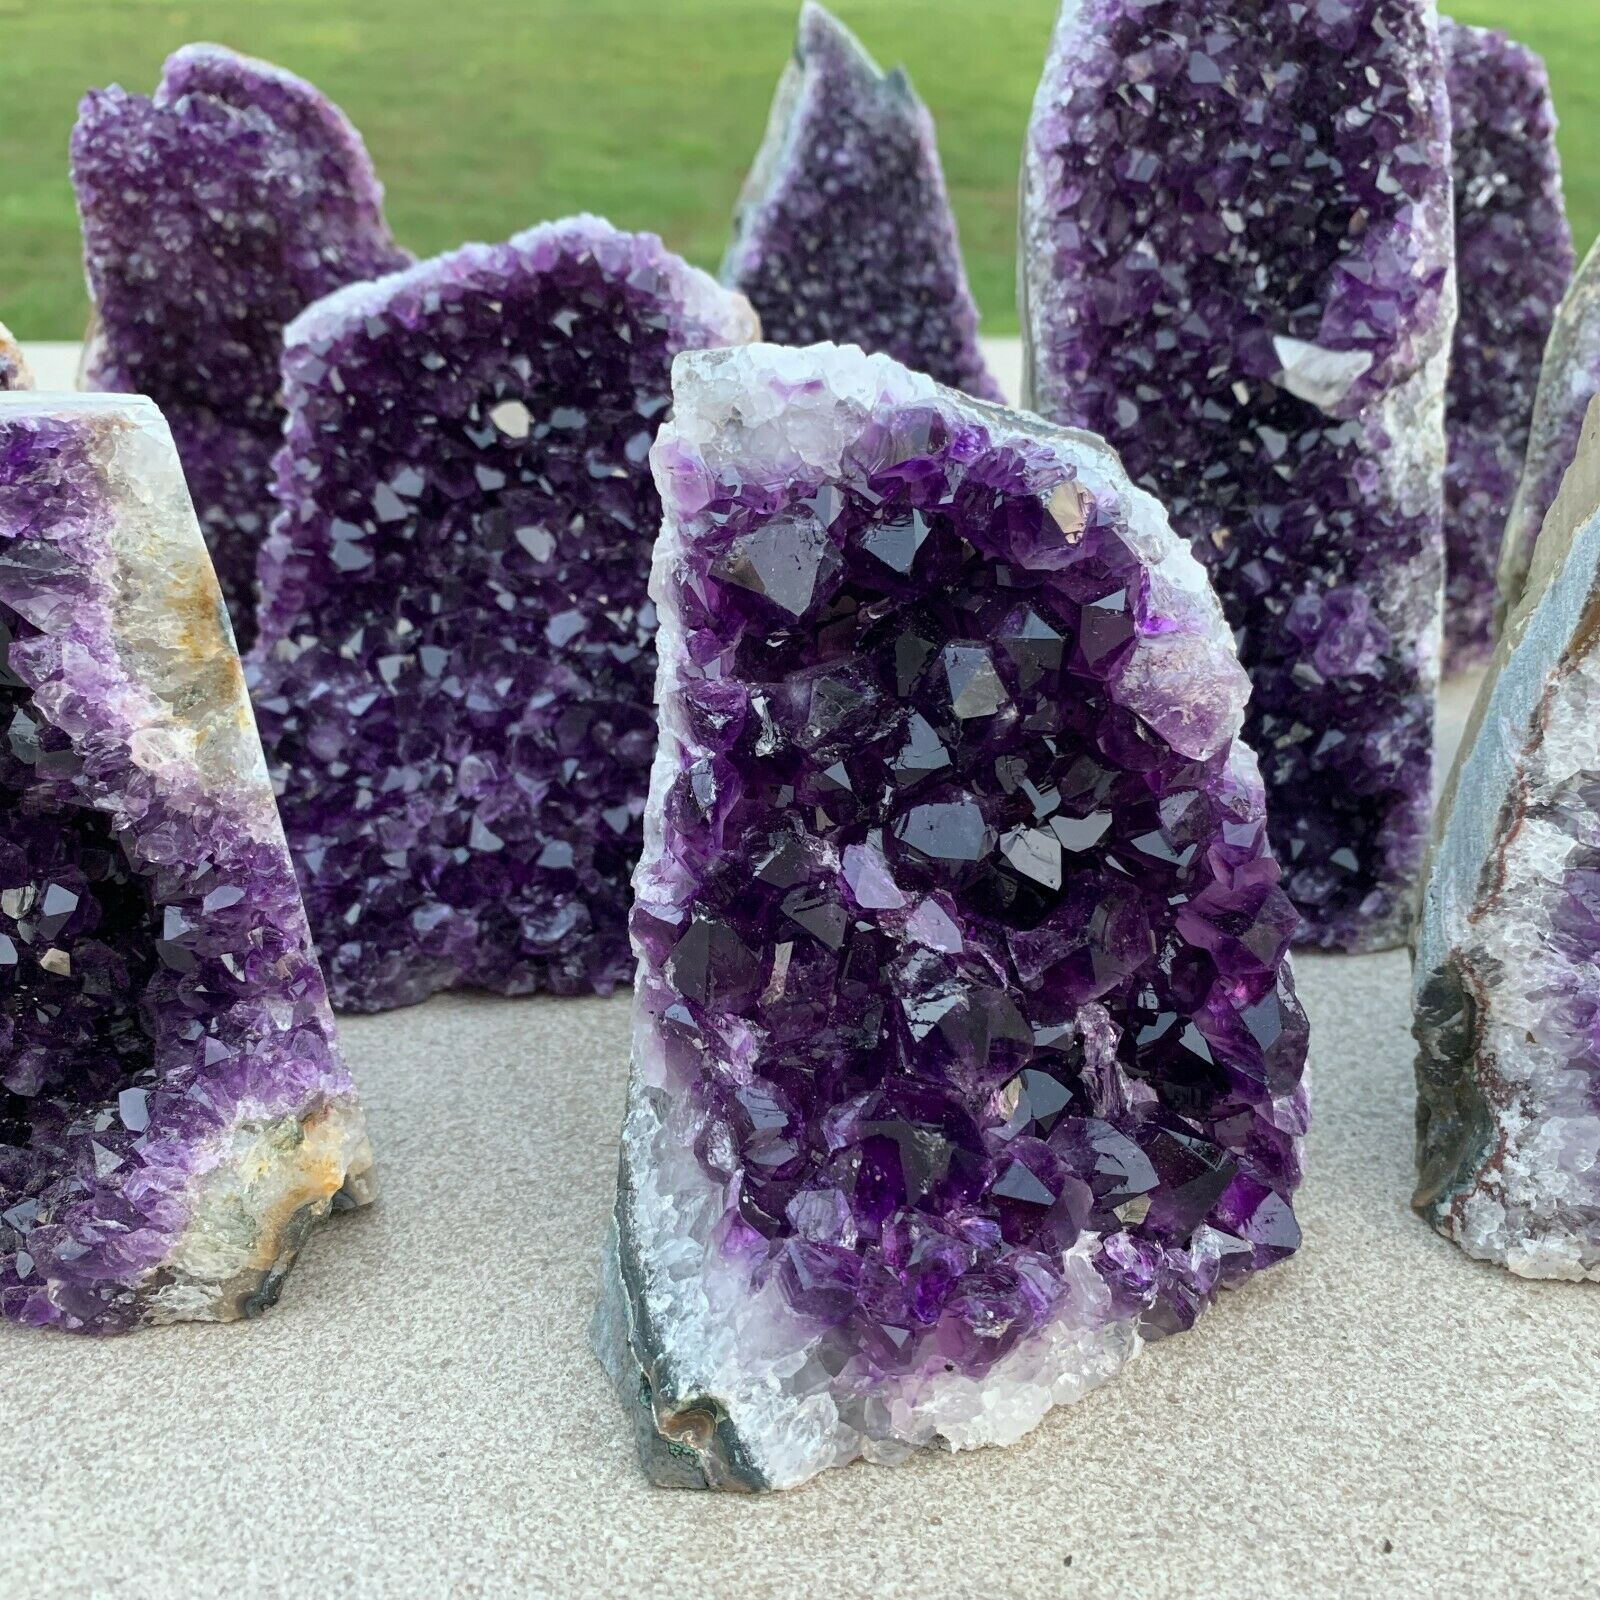 Natural Amethyst Geode Quartz Cluster Crystal Specimen Energy Healing